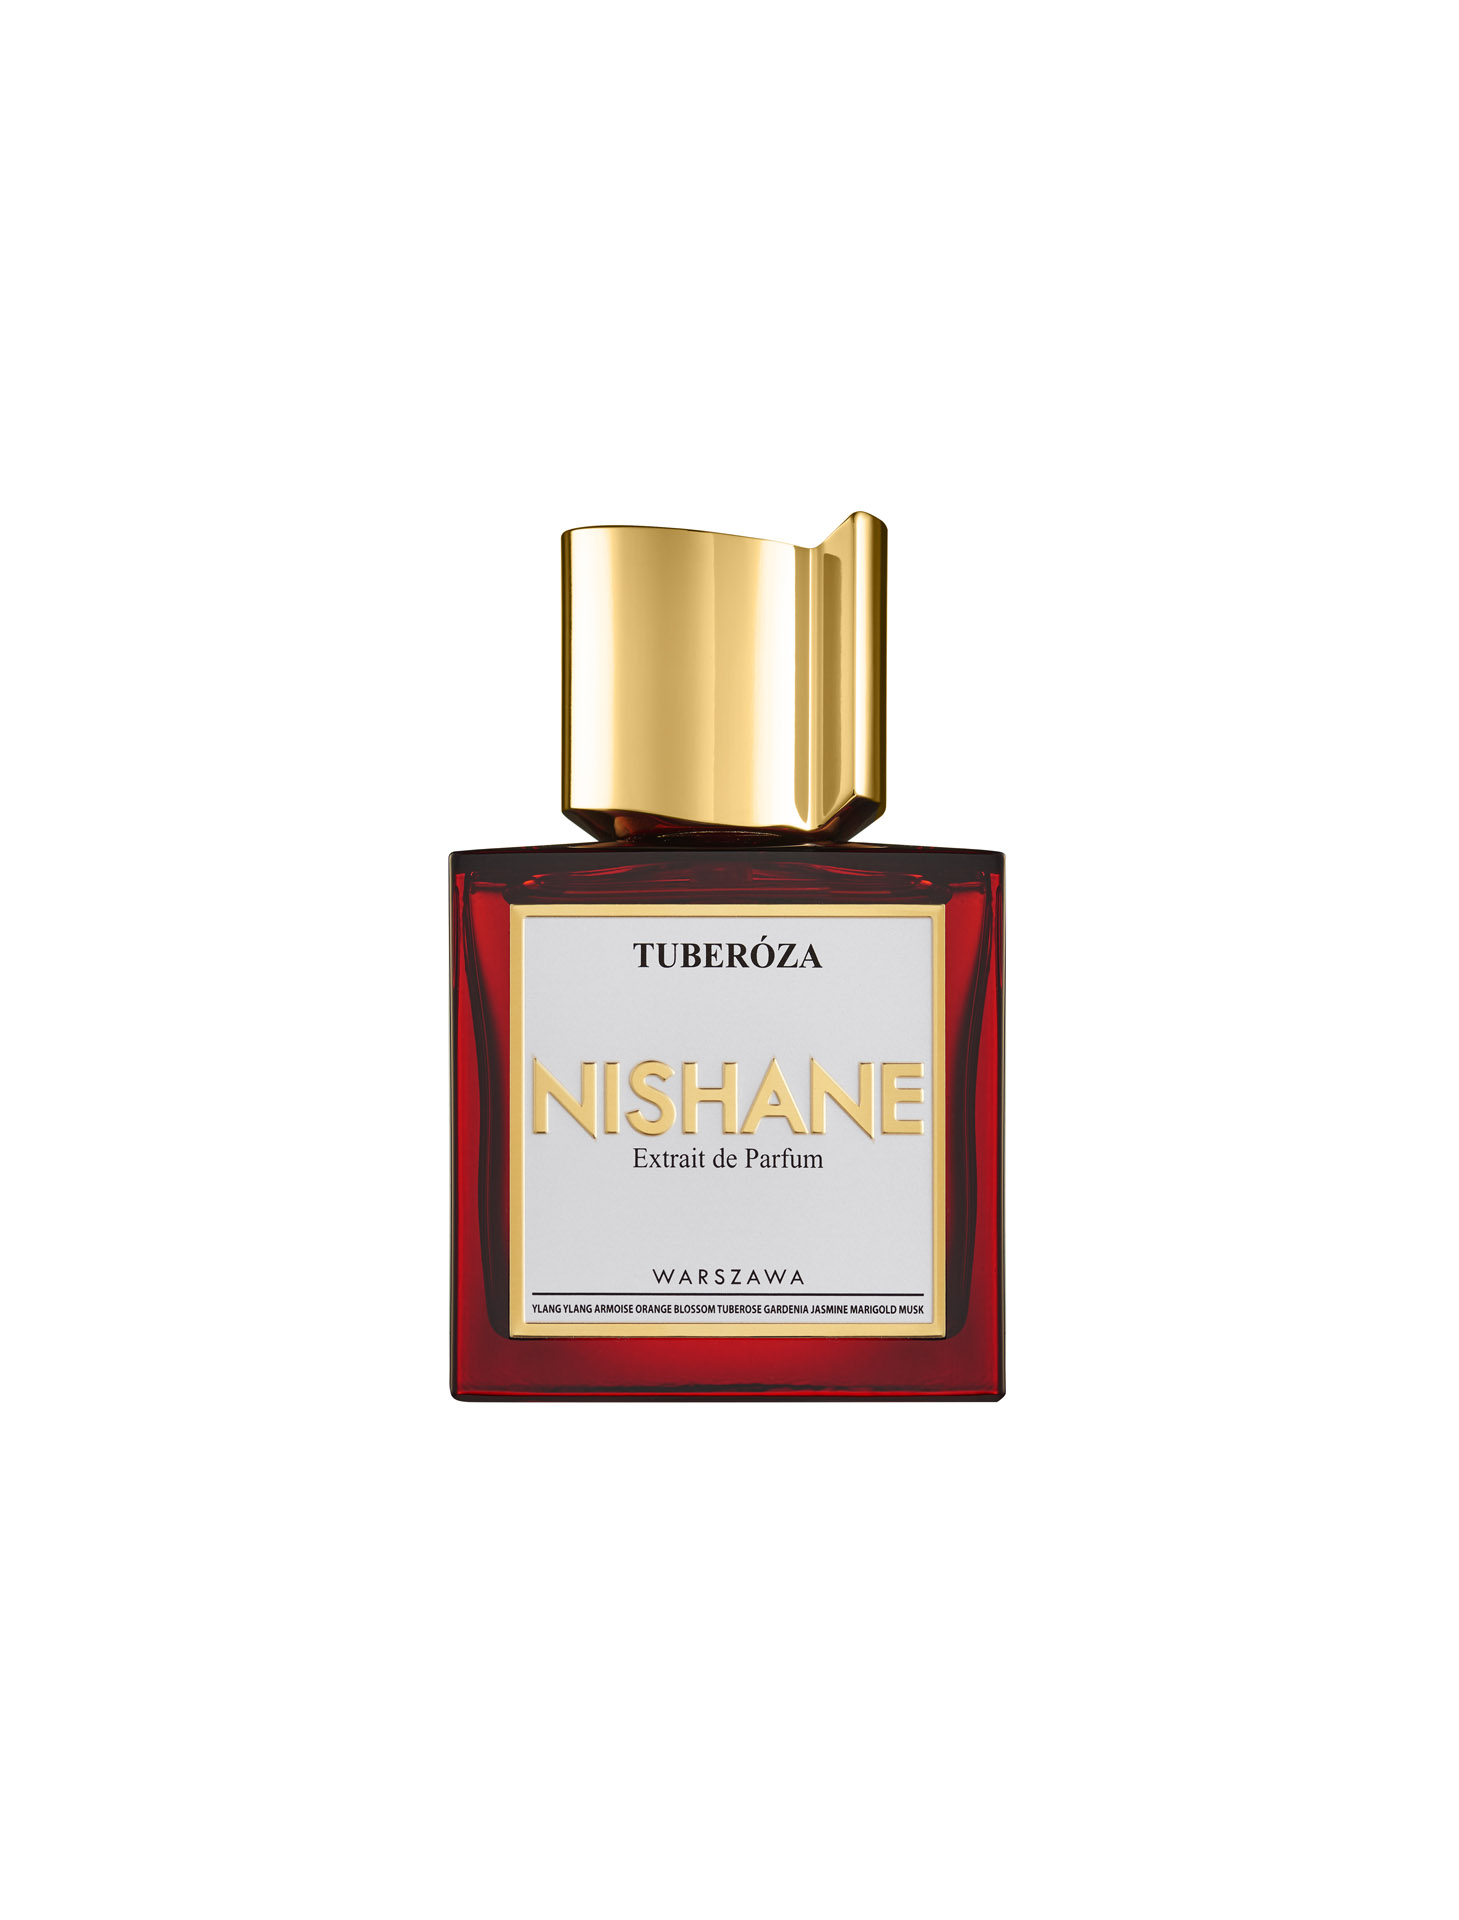 Nishane - Tuberóza - Extrait de Parfum